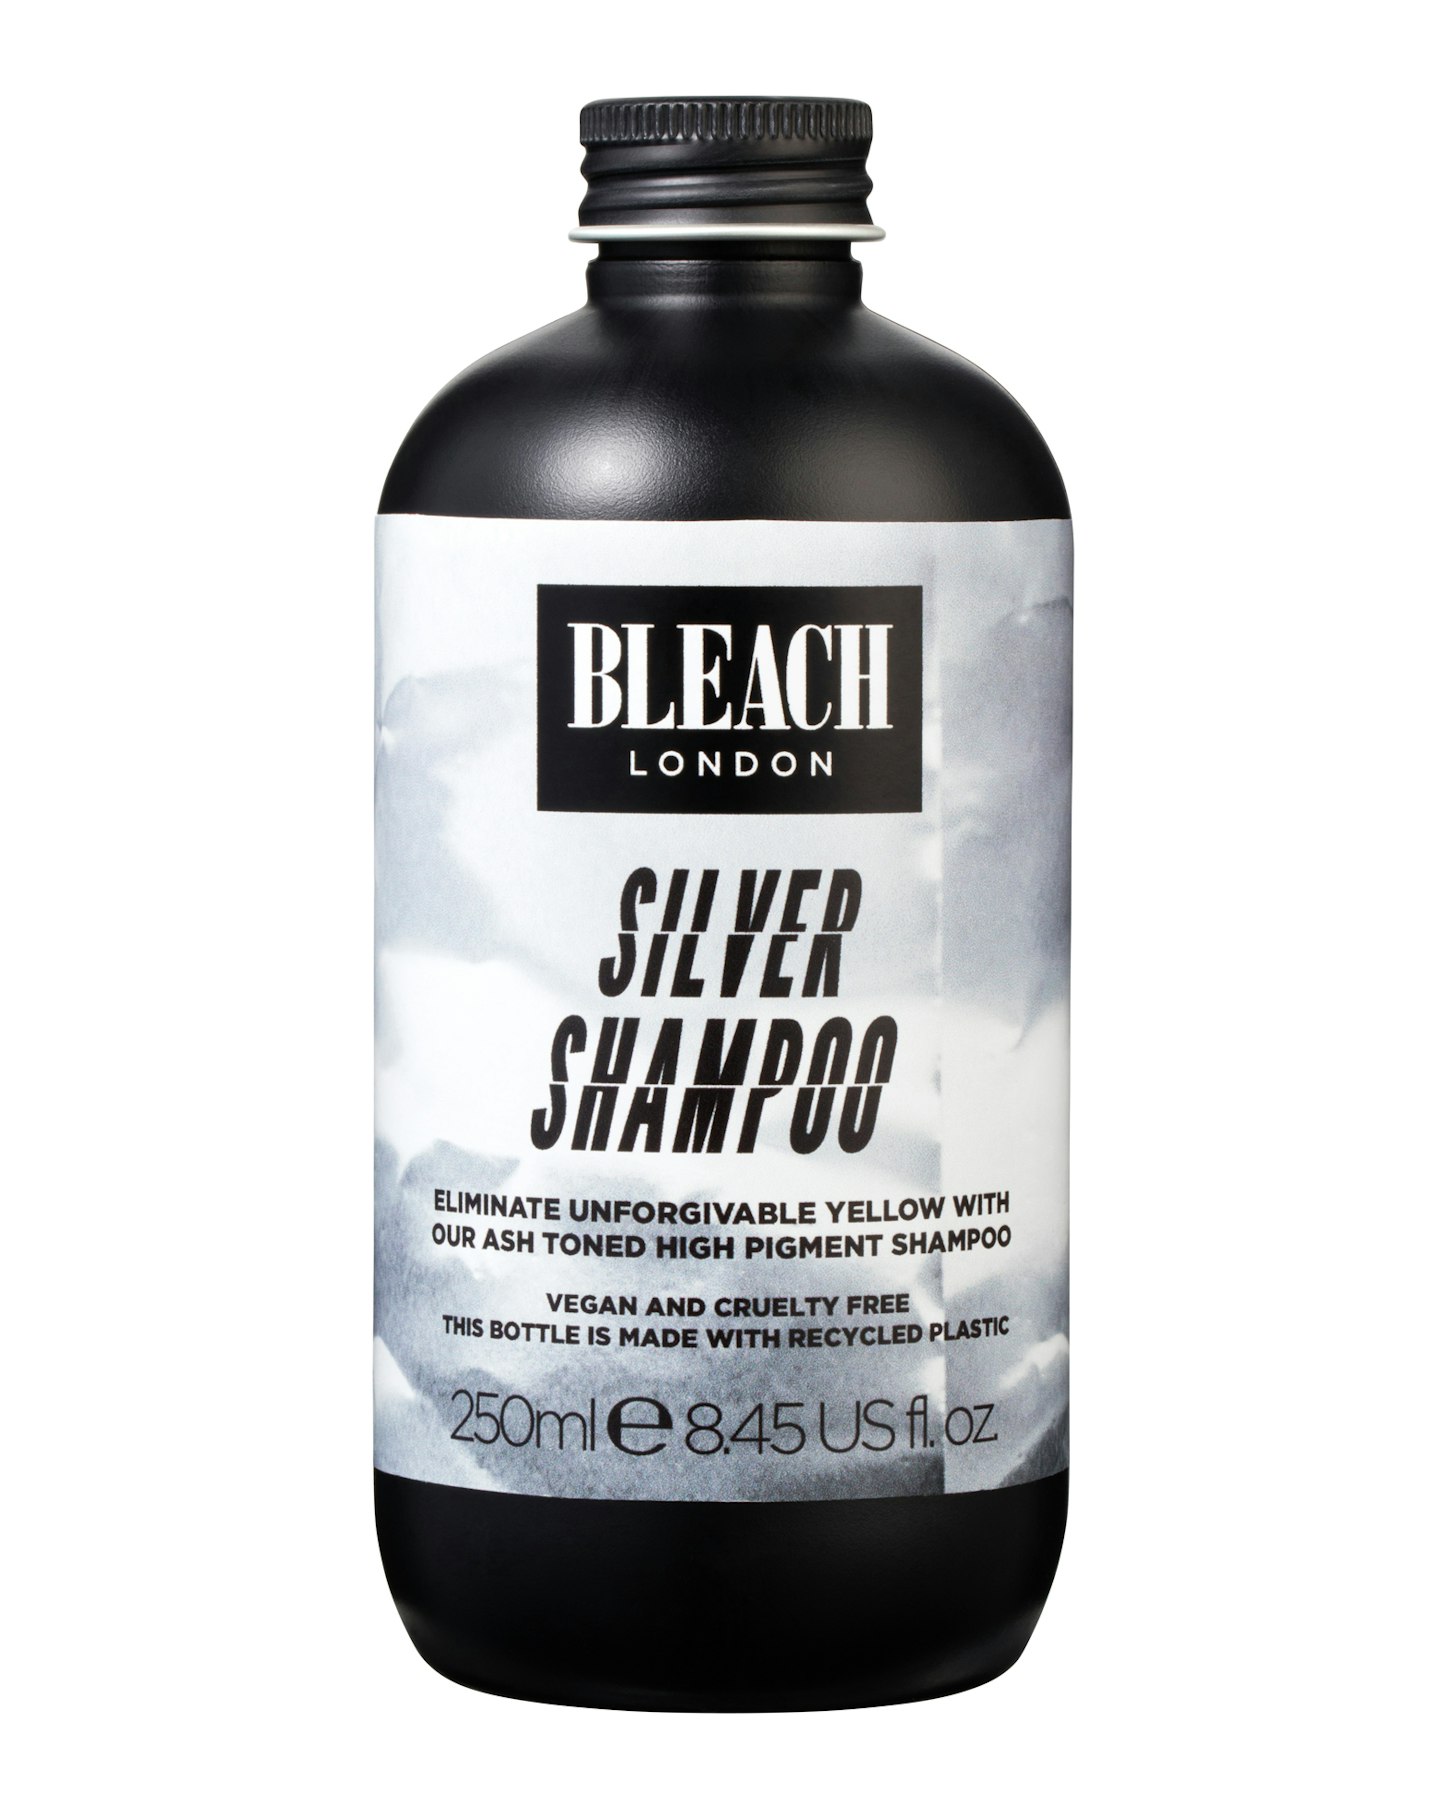 BLEACH LONDON Silver Shampoo, £10